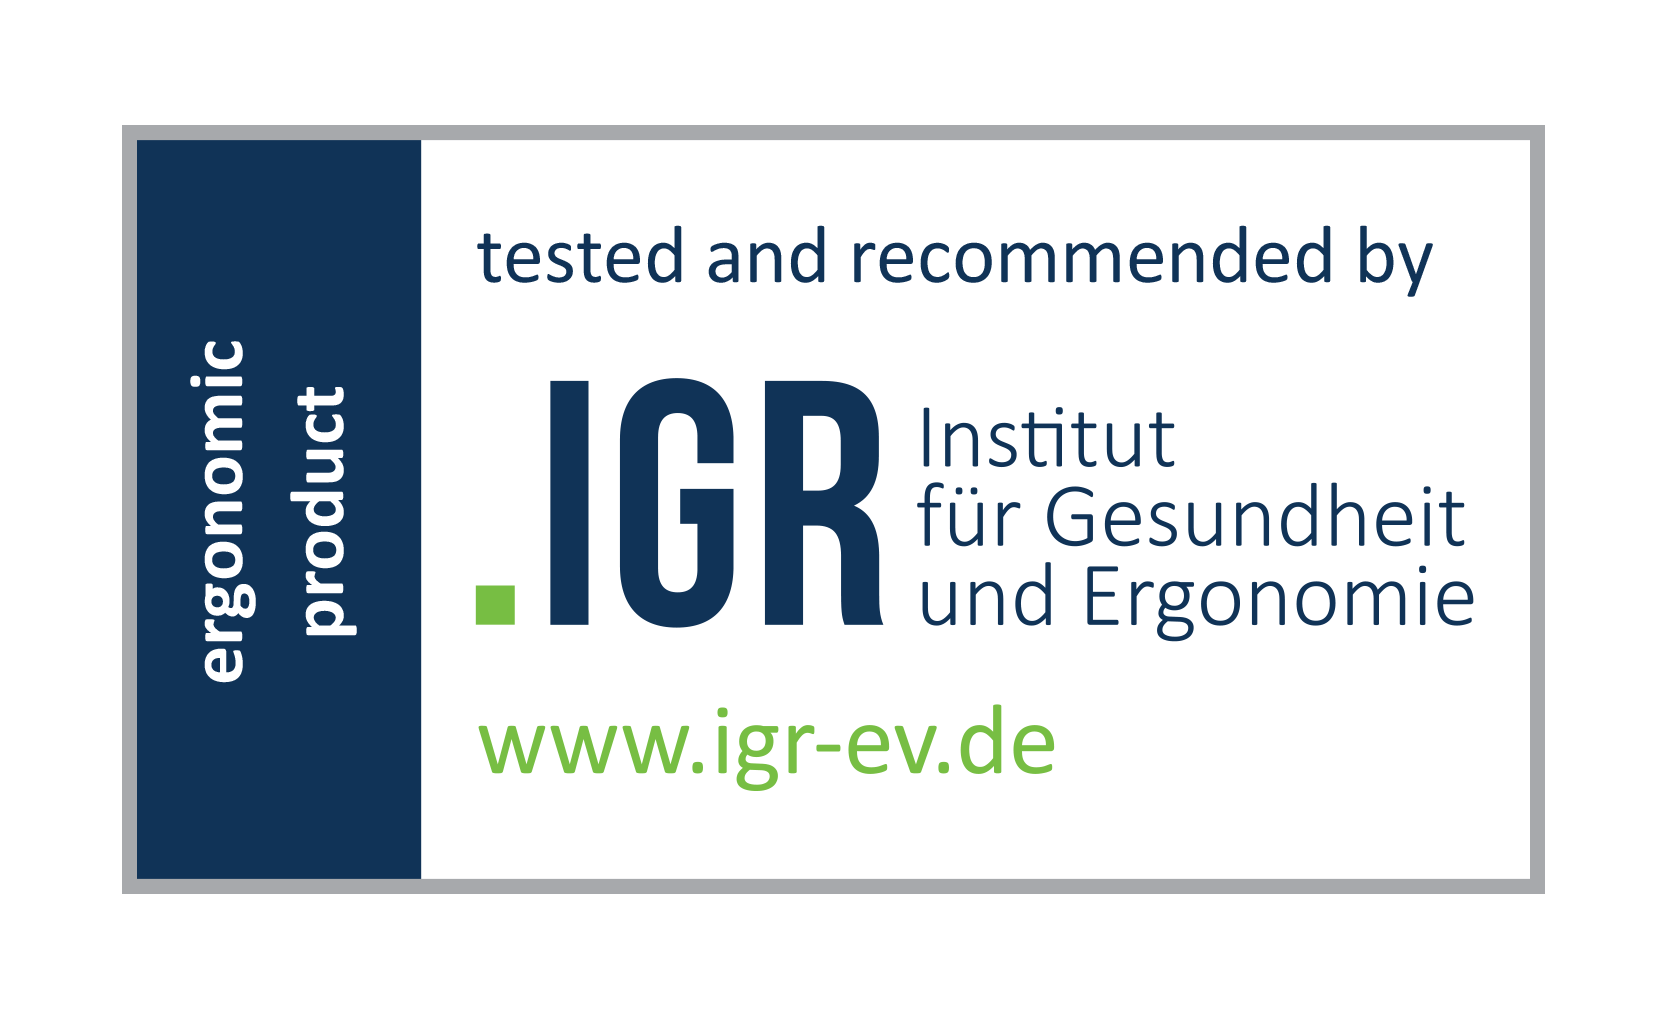 IGR - Institut für Gesundheit und Ergonomie (Germany)